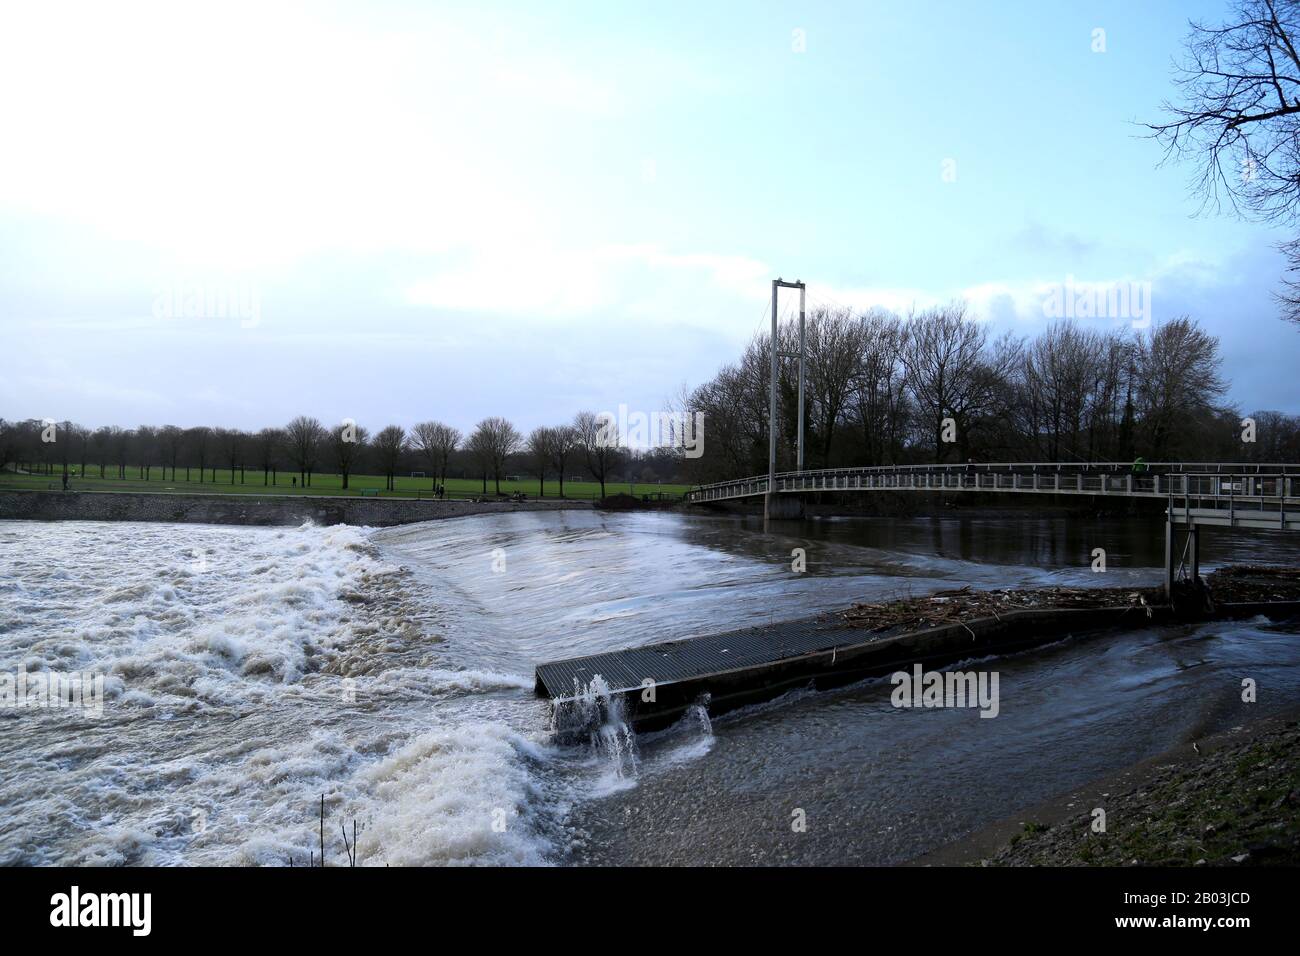 Cardiff, Galles. Febbraio 17th 2020. Storm Dennis, un ciclone di bomba, ha colpito il Regno Unito il sabato, subito dopo la tempesta Ciara, causando un'inondazione diffusa Foto Stock